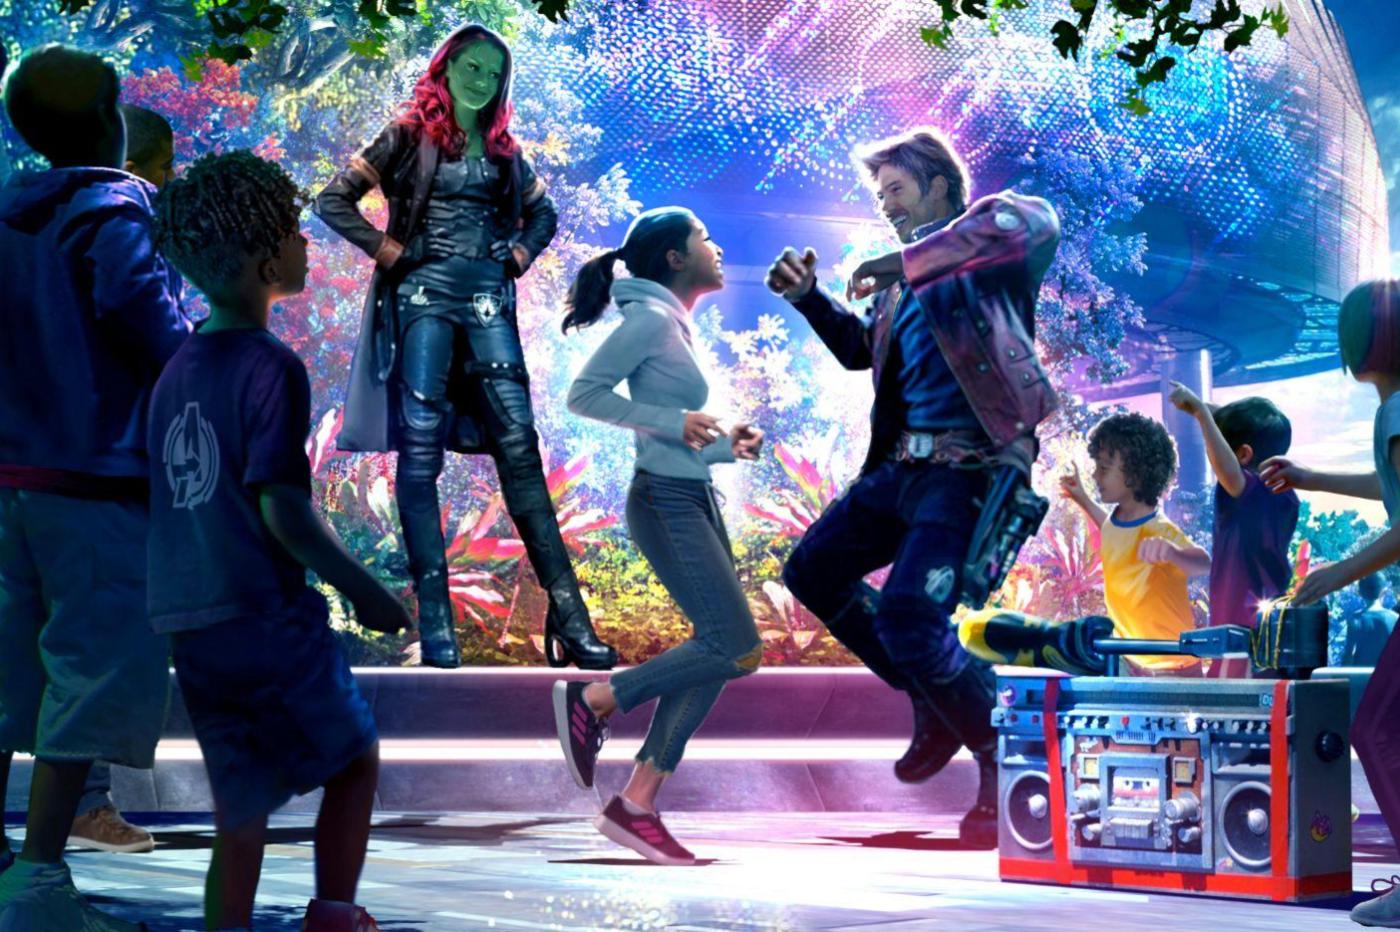 Image promotionnel du spectacle Guardians of the galaxy dance off qui fera son retour au sein du avengers campus